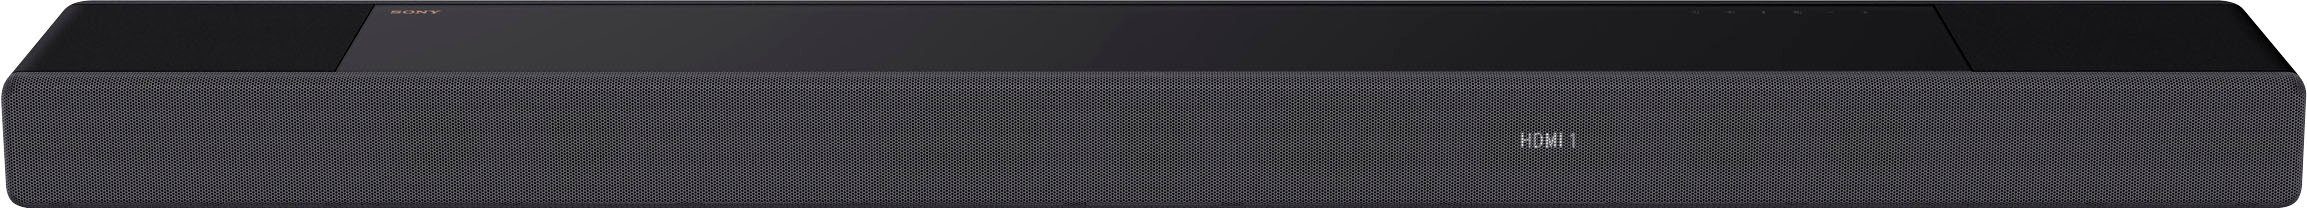 Sony HT-A7000 7.1.2 Soundbar Gesamtleistung) Center High-Res WLAN (Bluetooth, (Ethernet), Acoustic HDMI, Sync, Audio, LAN 500W (WiFi)